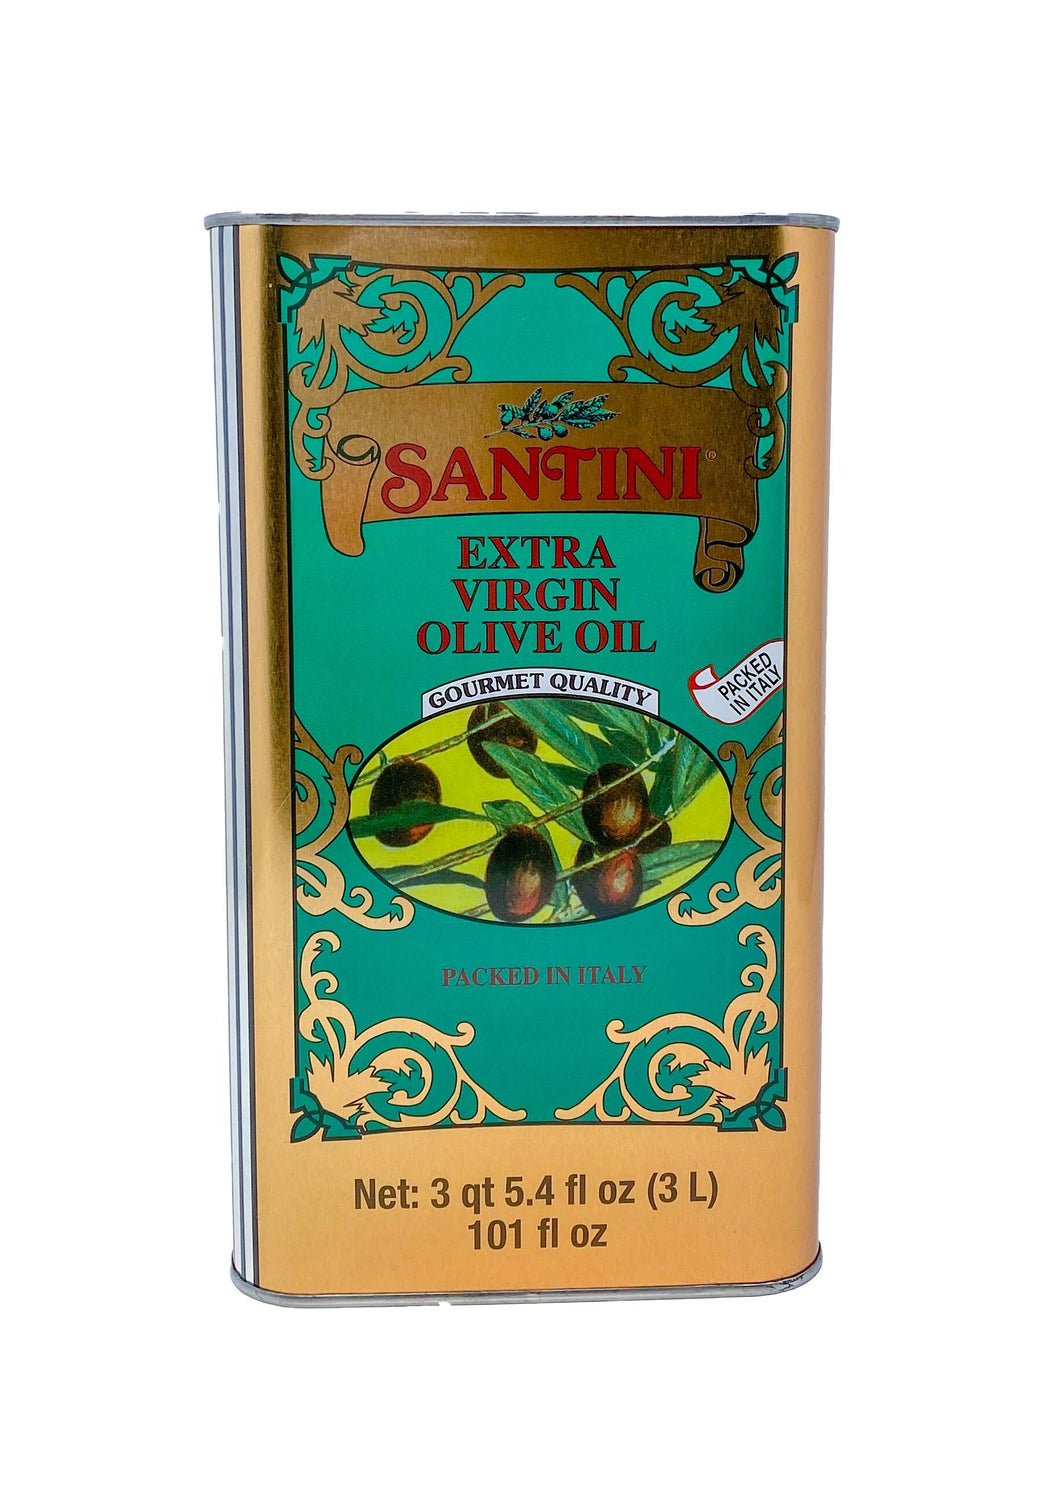 Santini Extra Virgin Olive Oil 3L